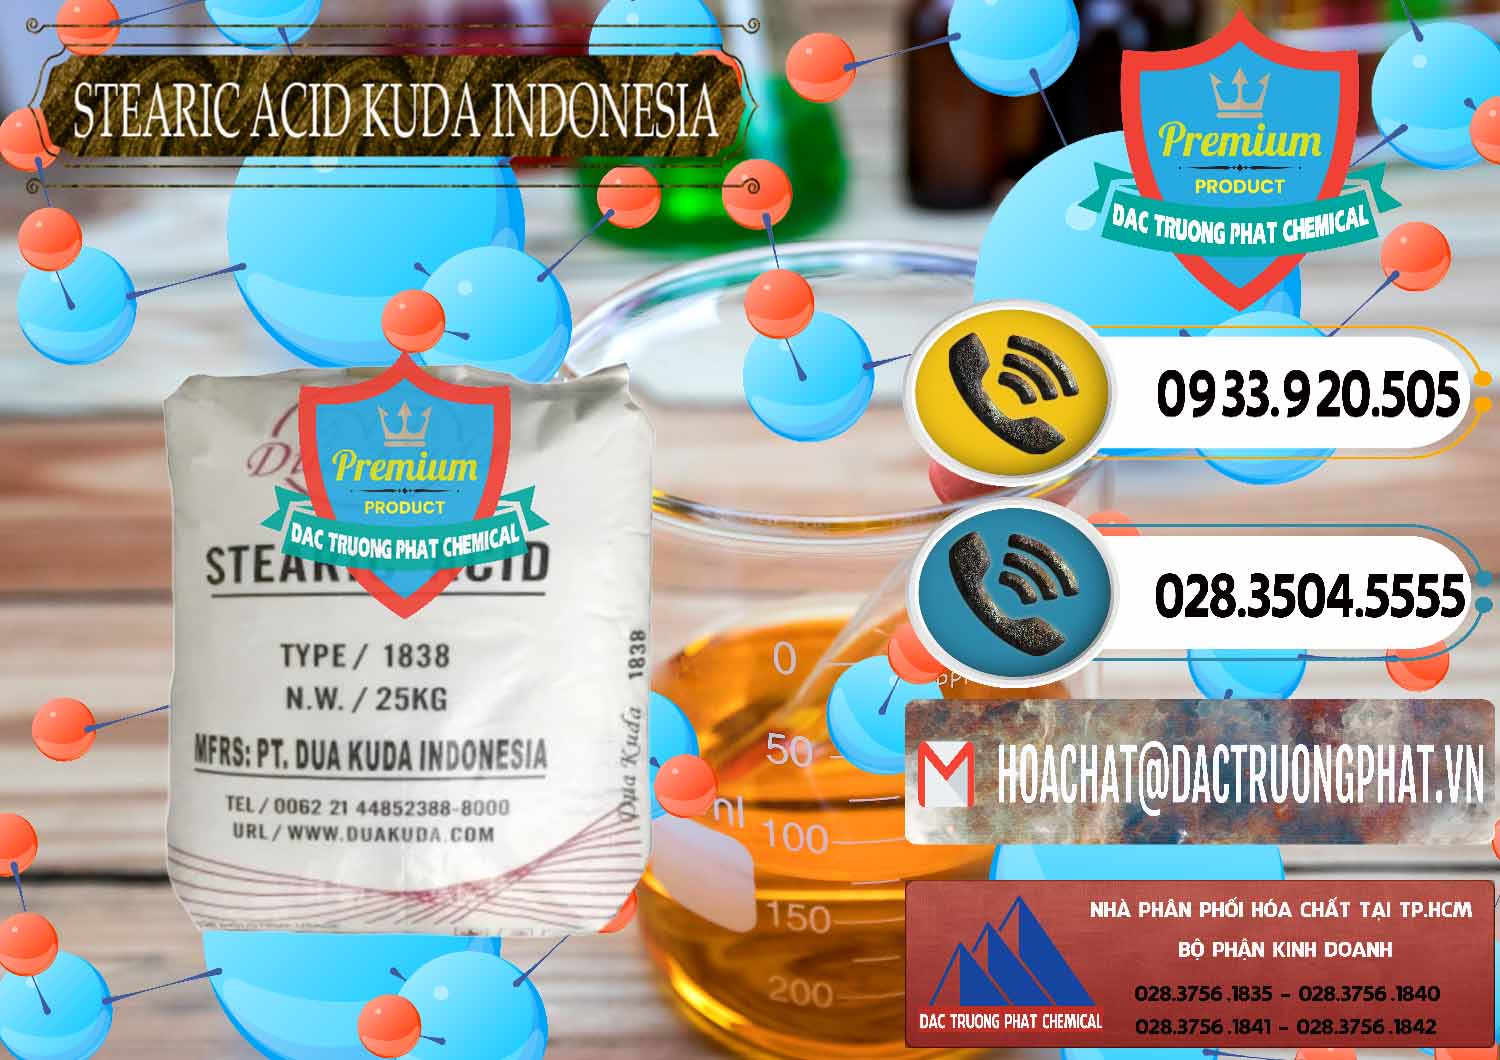 Nơi chuyên cung cấp _ bán Axit Stearic - Stearic Acid Dua Kuda Indonesia - 0388 - Công ty chuyên nhập khẩu và cung cấp hóa chất tại TP.HCM - hoachatdetnhuom.vn